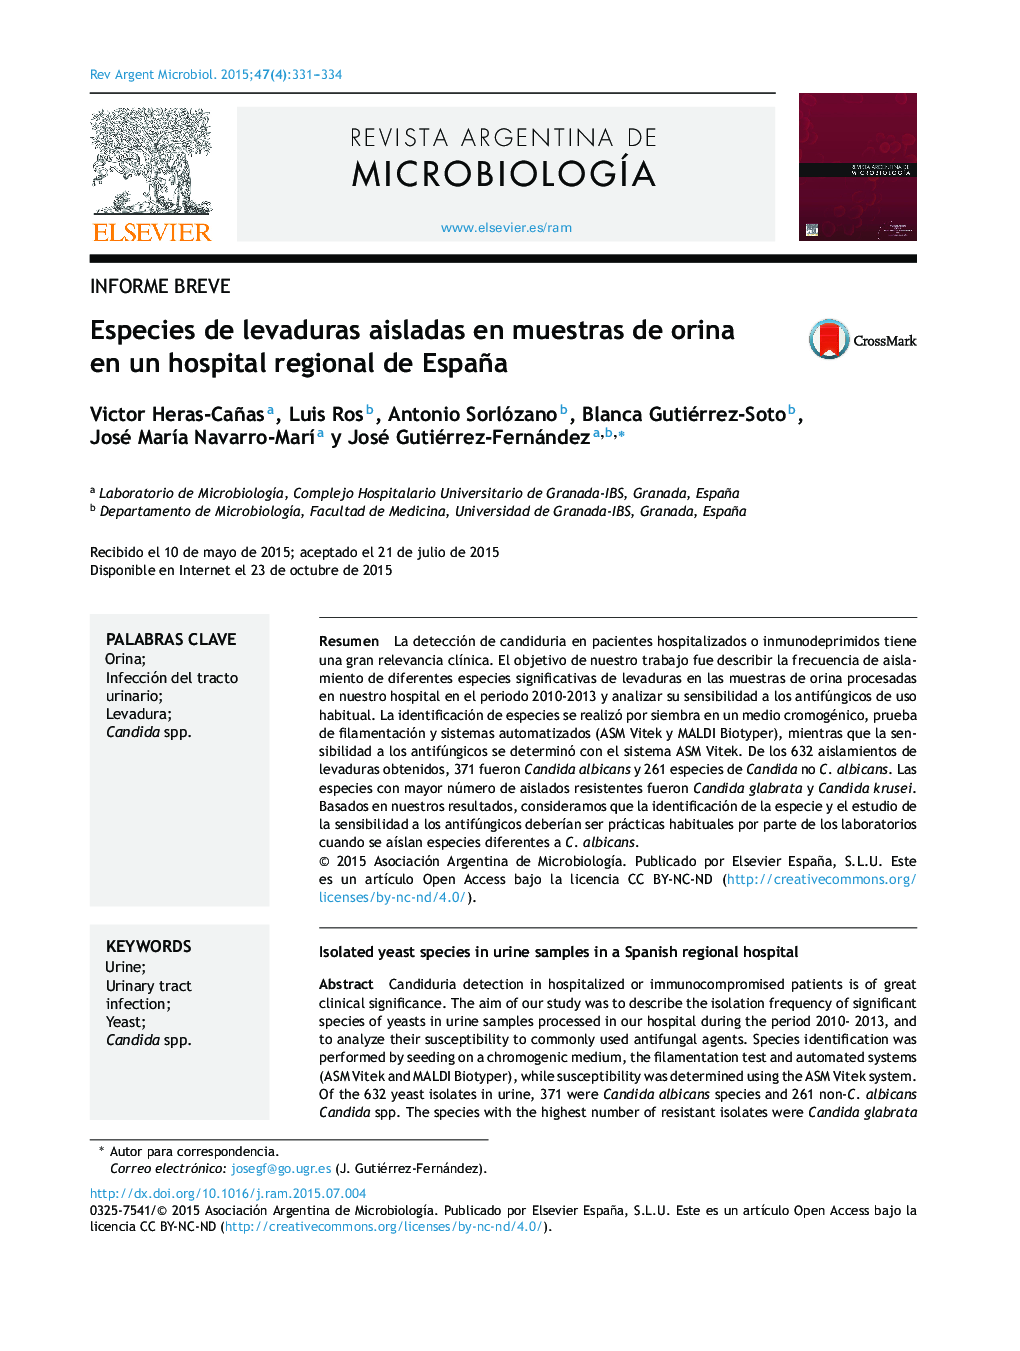 Especies de levaduras aisladas en muestras de orina en un hospital regional de España